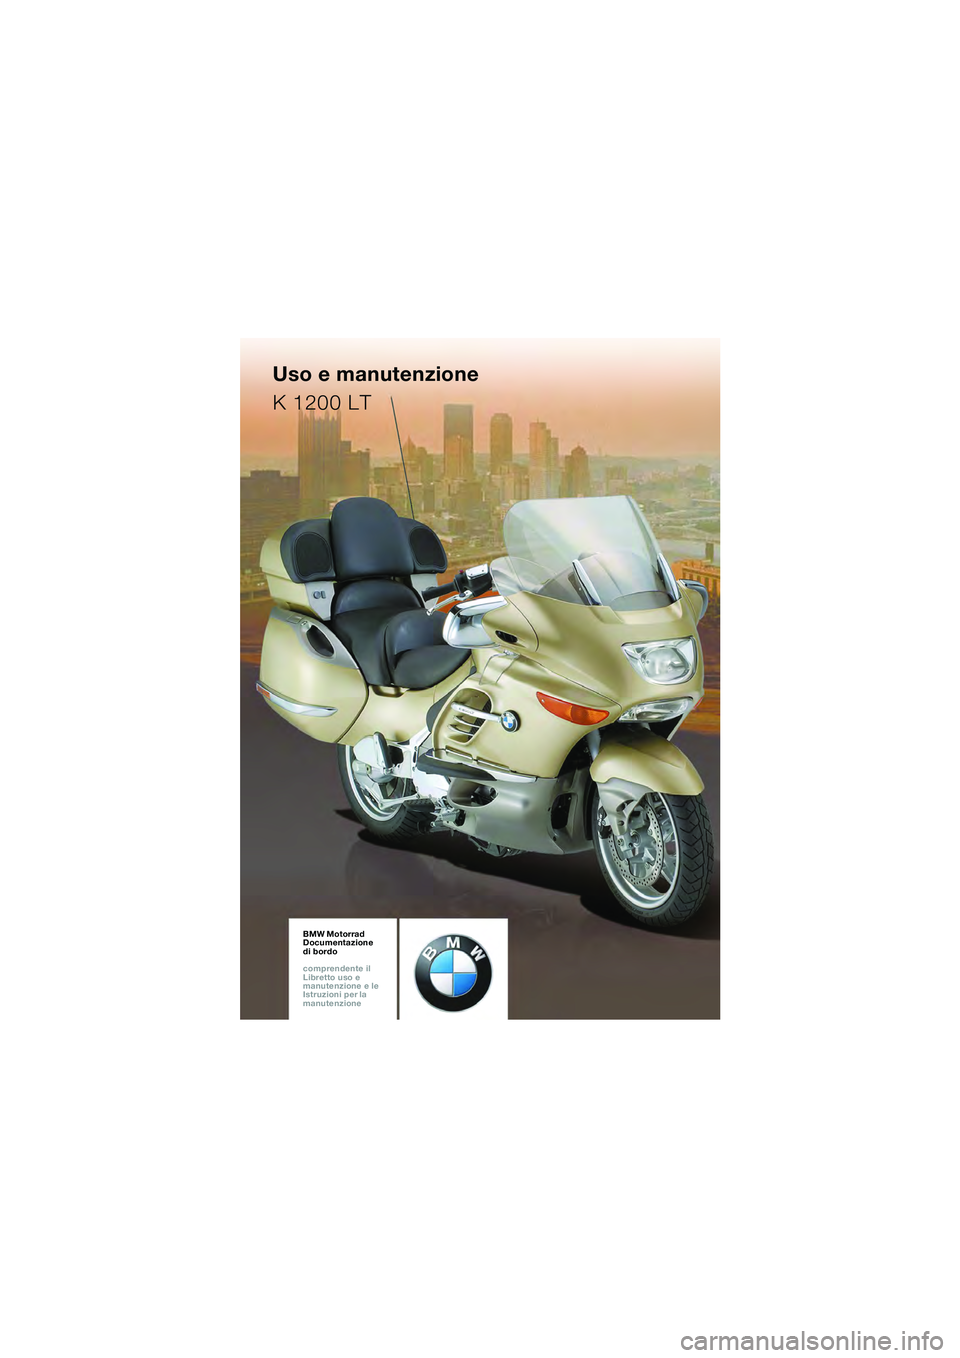 BMW MOTORRAD K 1200 LT 2005  Libretto di uso e manutenzione (in Italian) BMW Motorrad
Documentazione  
di bordo
comprendente il  
Libretto uso e  
manutenzione e le  
Istruzioni per la  
manutenzioneBMW Motorrad
Documentazione  
di bordo
comprendente il  
Libretto uso e  
